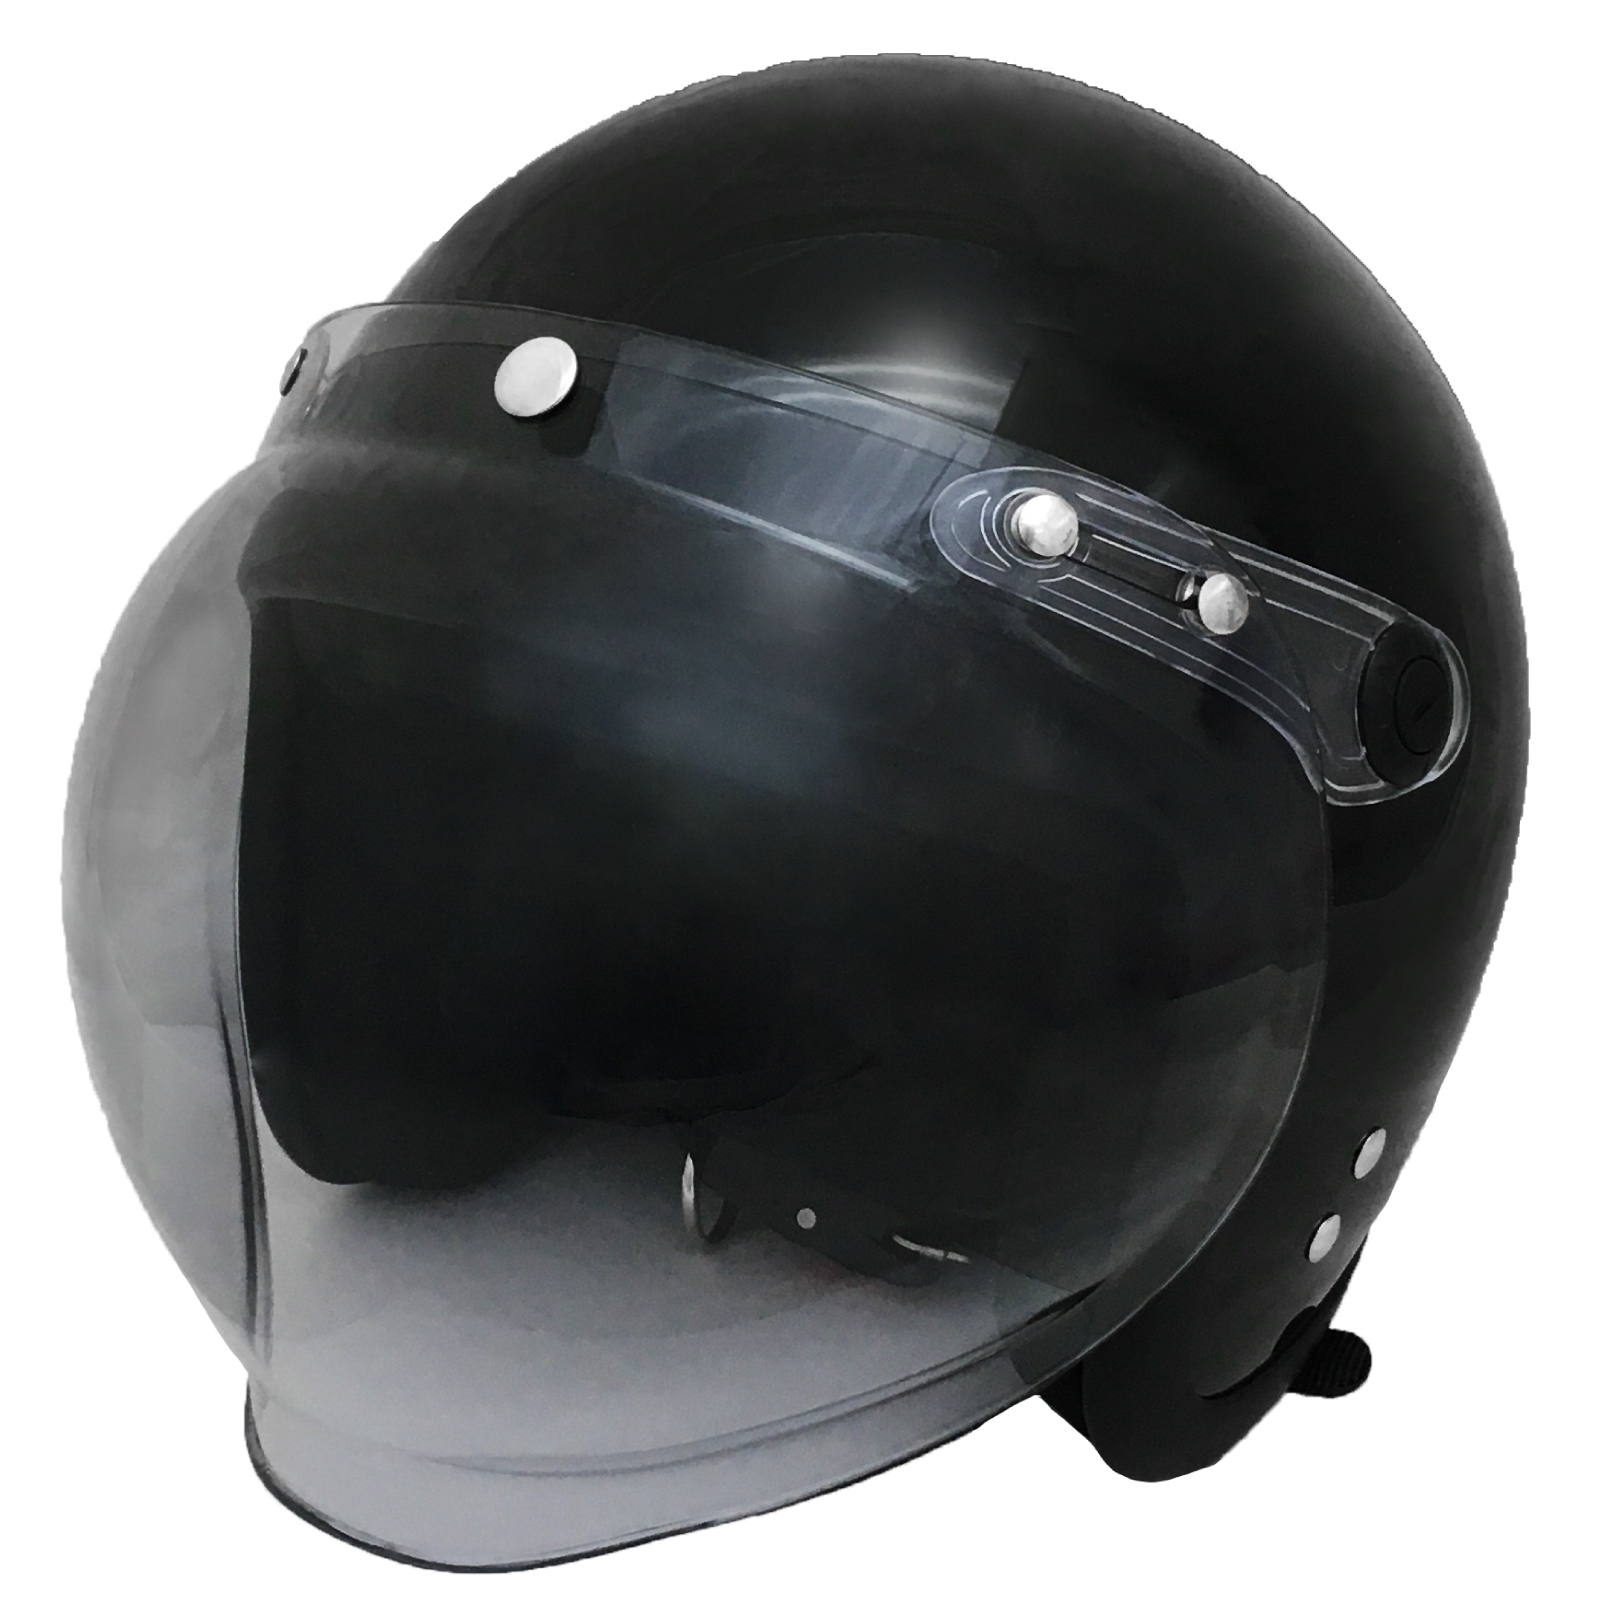 ジェット ヘルメット フリーサイズ 全排気量対応 レディース メンズ シールド付き UV加工 Pow...